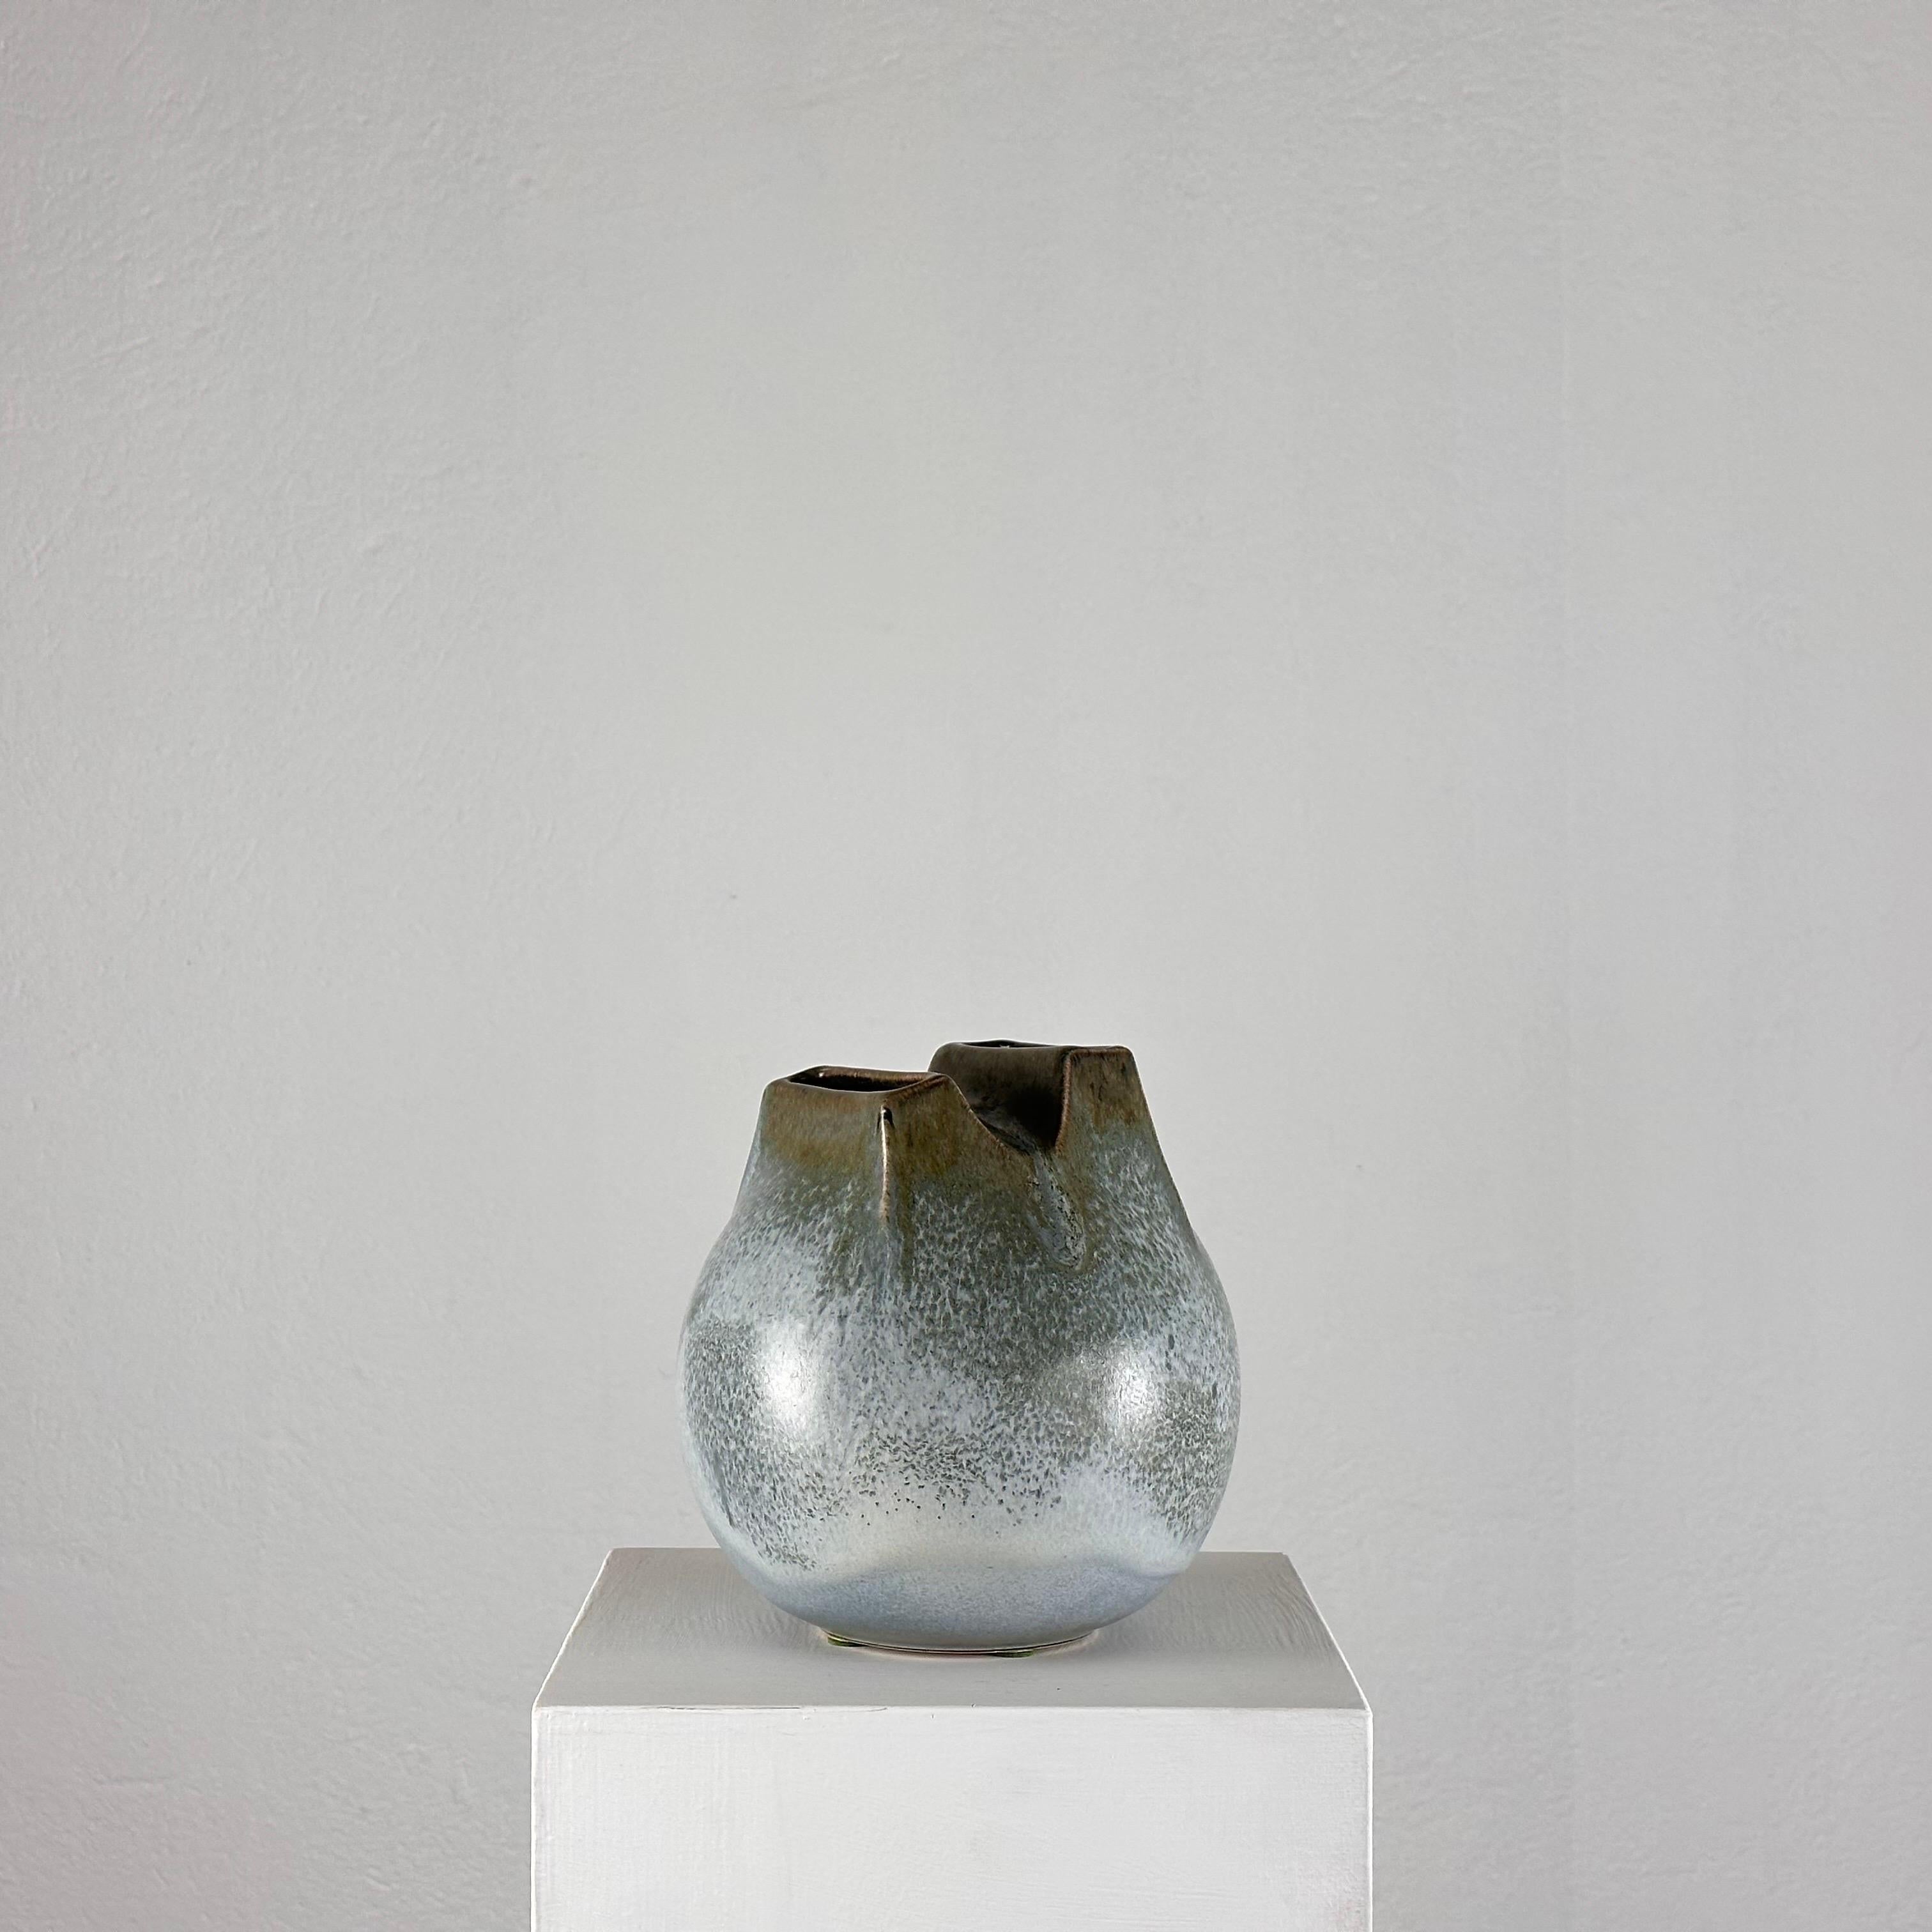 
Faites une déclaration audacieuse dans votre maison avec cet extraordinaire vase en céramique conçu par Franco Bucci dans les années 1970. Surnommé le vase 